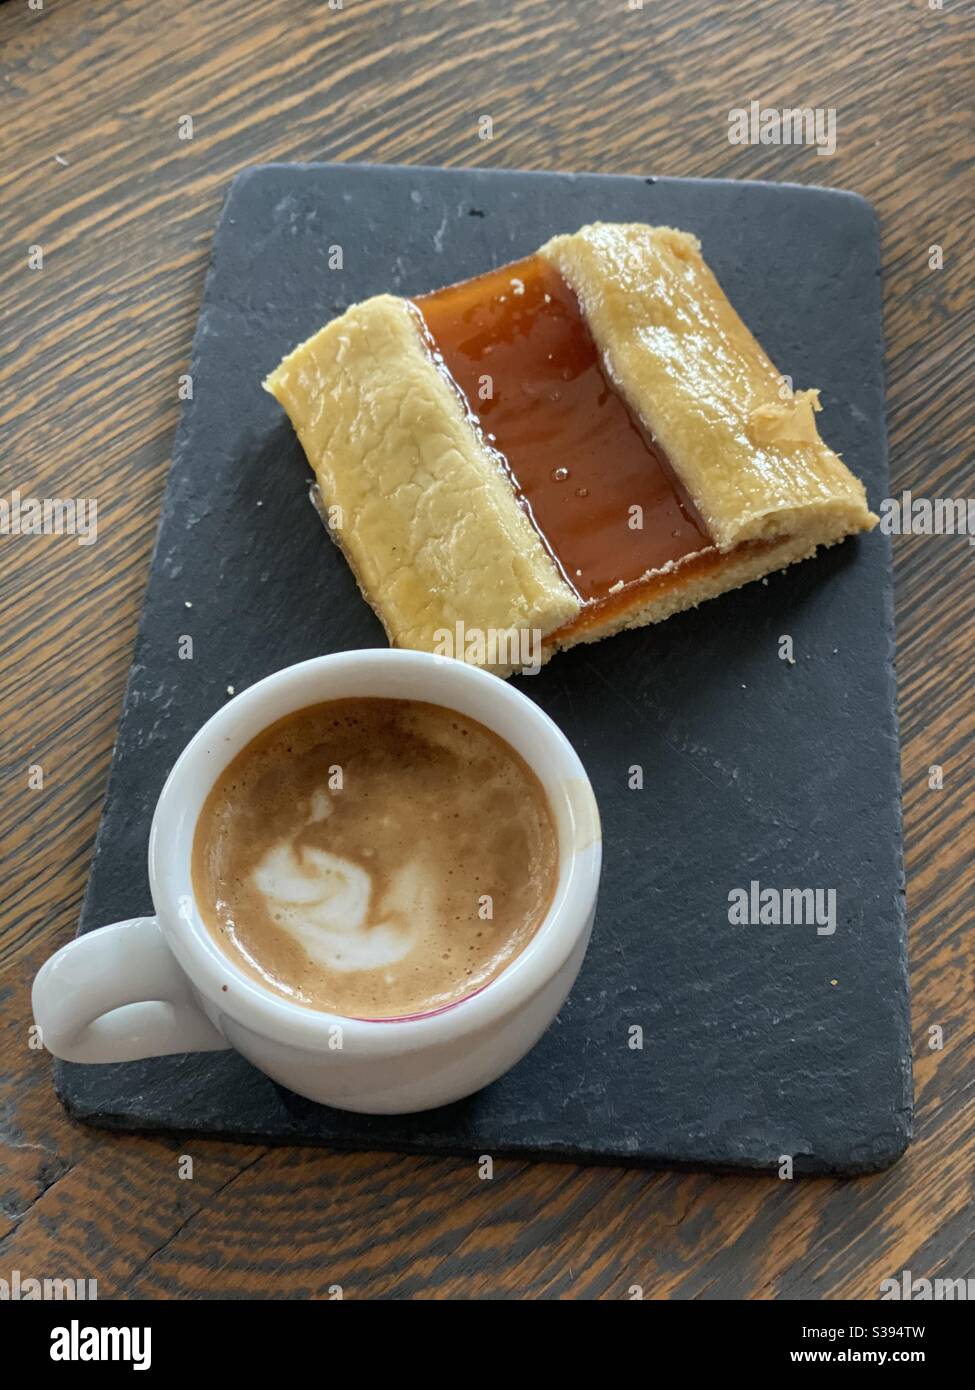 Coffee break with dessert Stock Photo